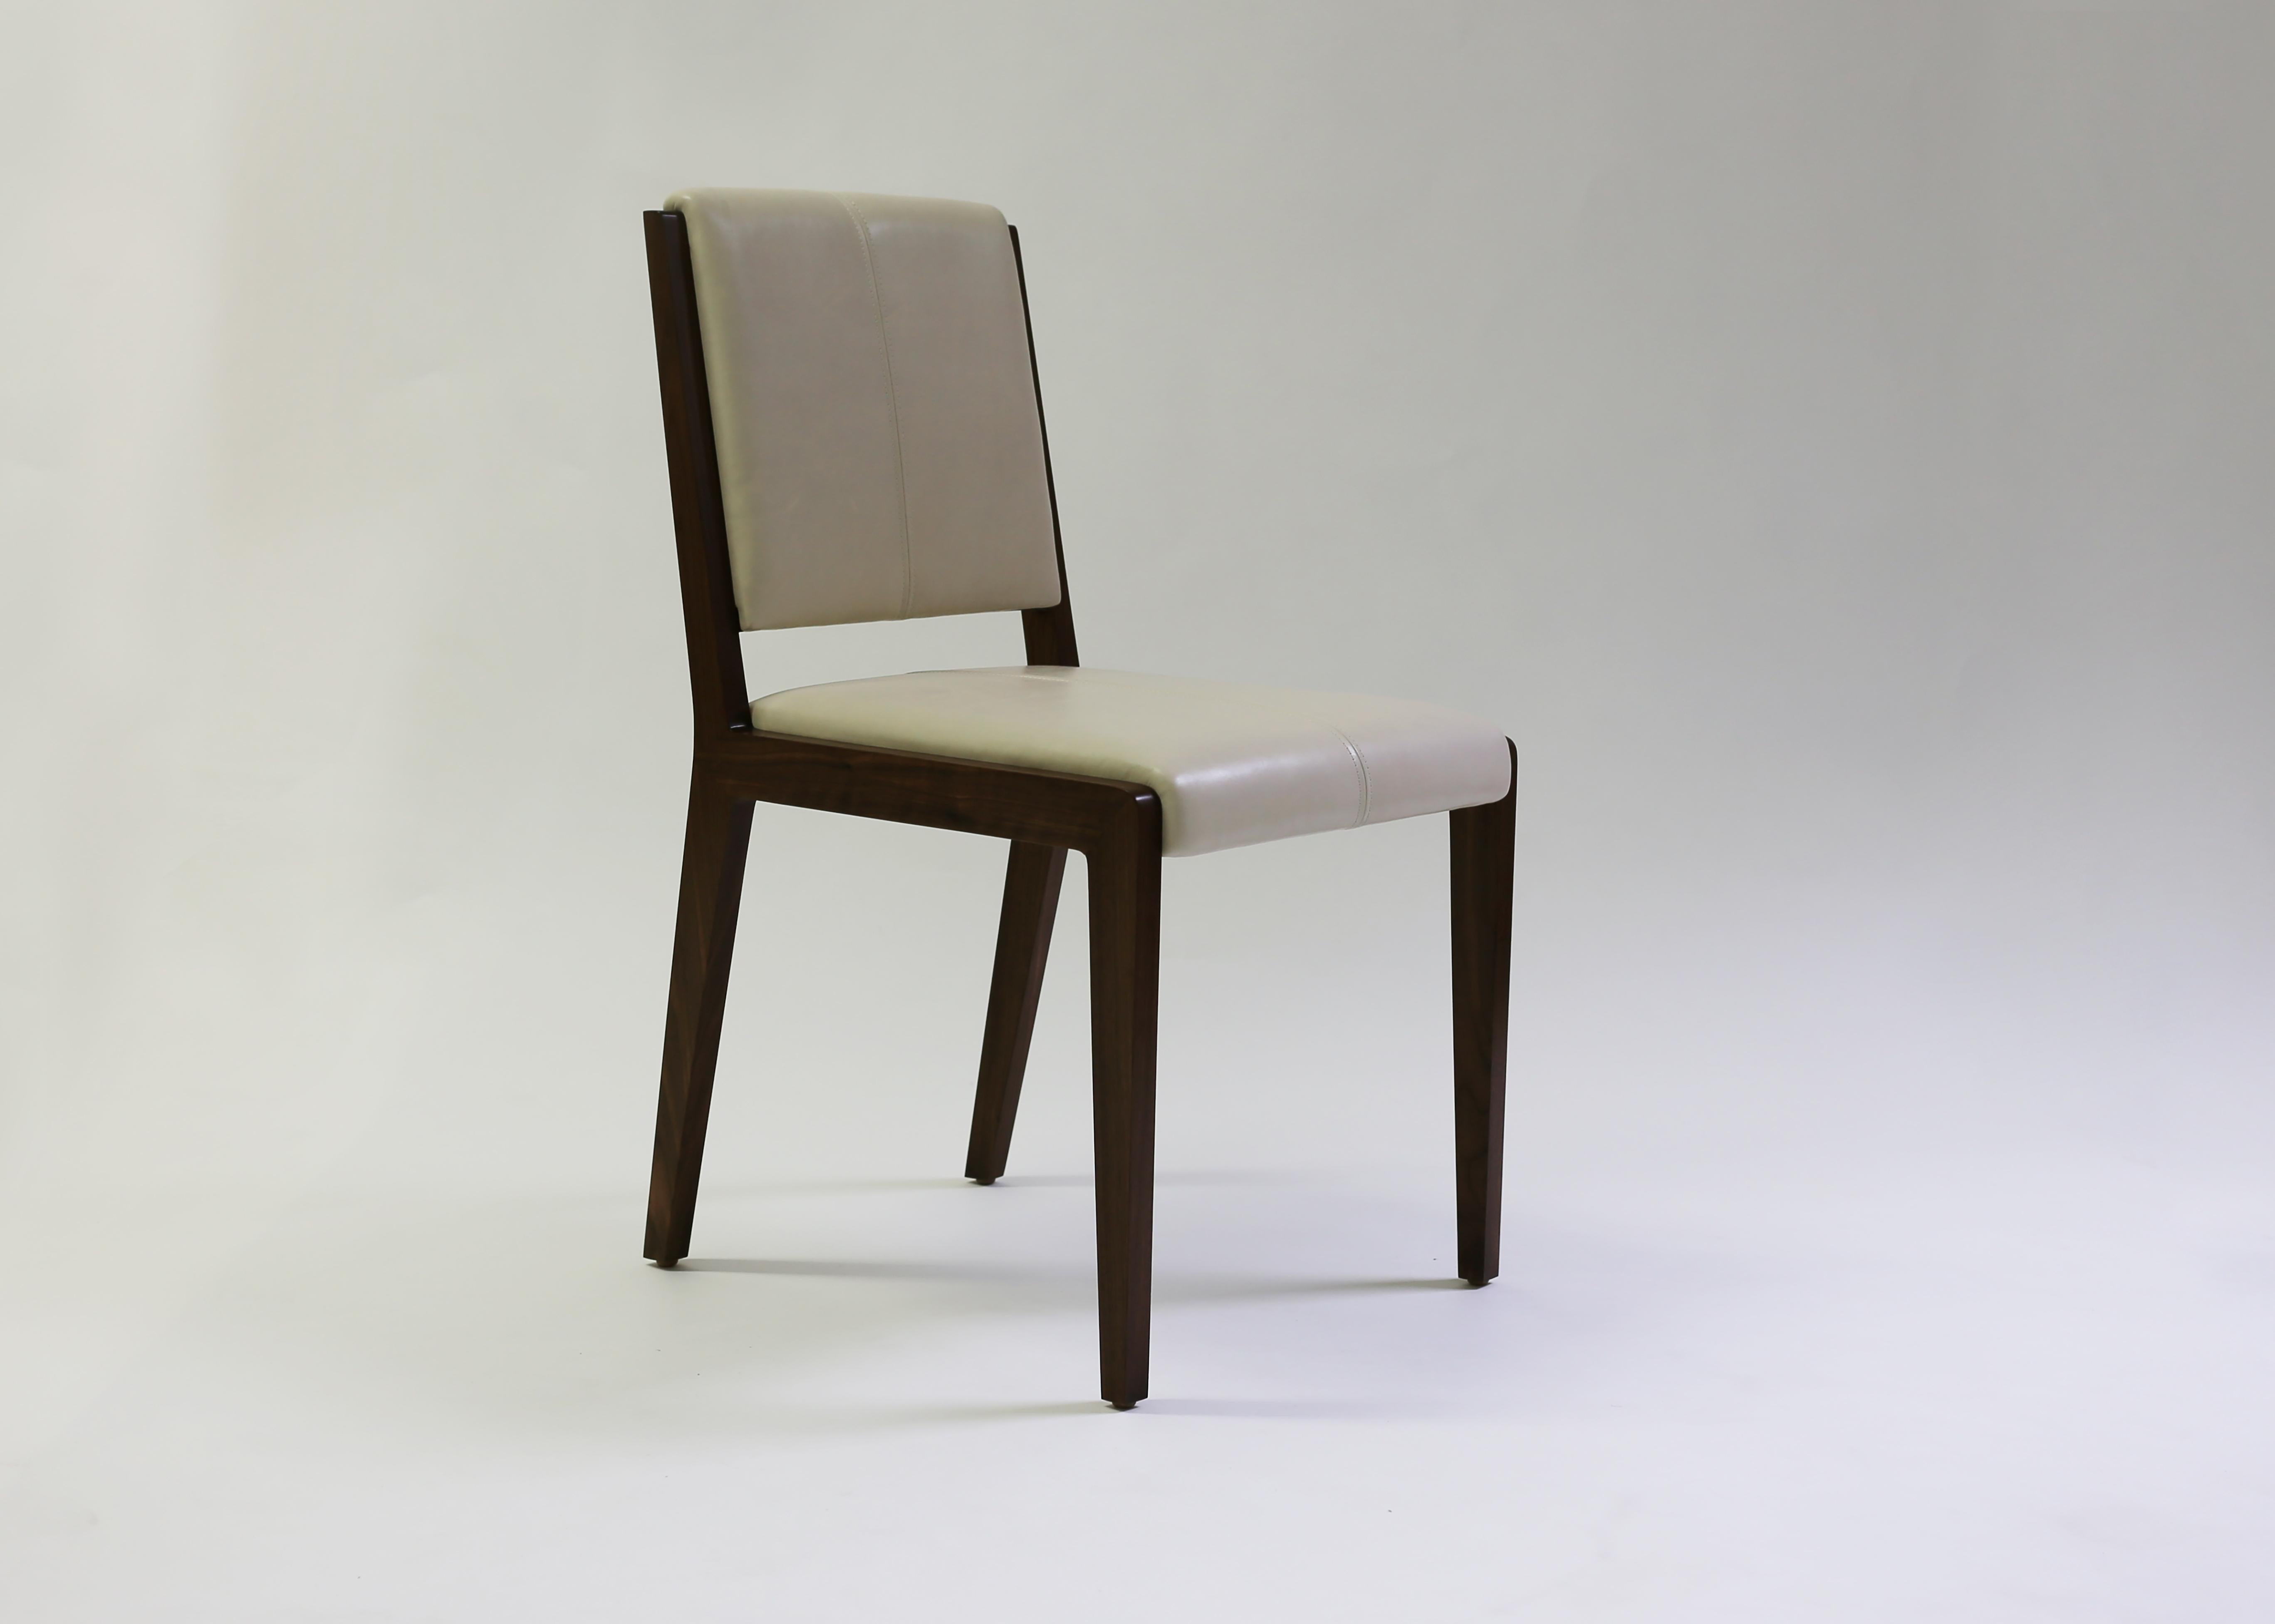 La chaise Emile de LF upholstery, présentée en cuir beige avec des détails artisanaux en points sellier sur l'intérieur du dossier et de l'assise, donne un aspect sophistiqué à une chaise de style classique. Peut être utilisé à la fois comme chaise